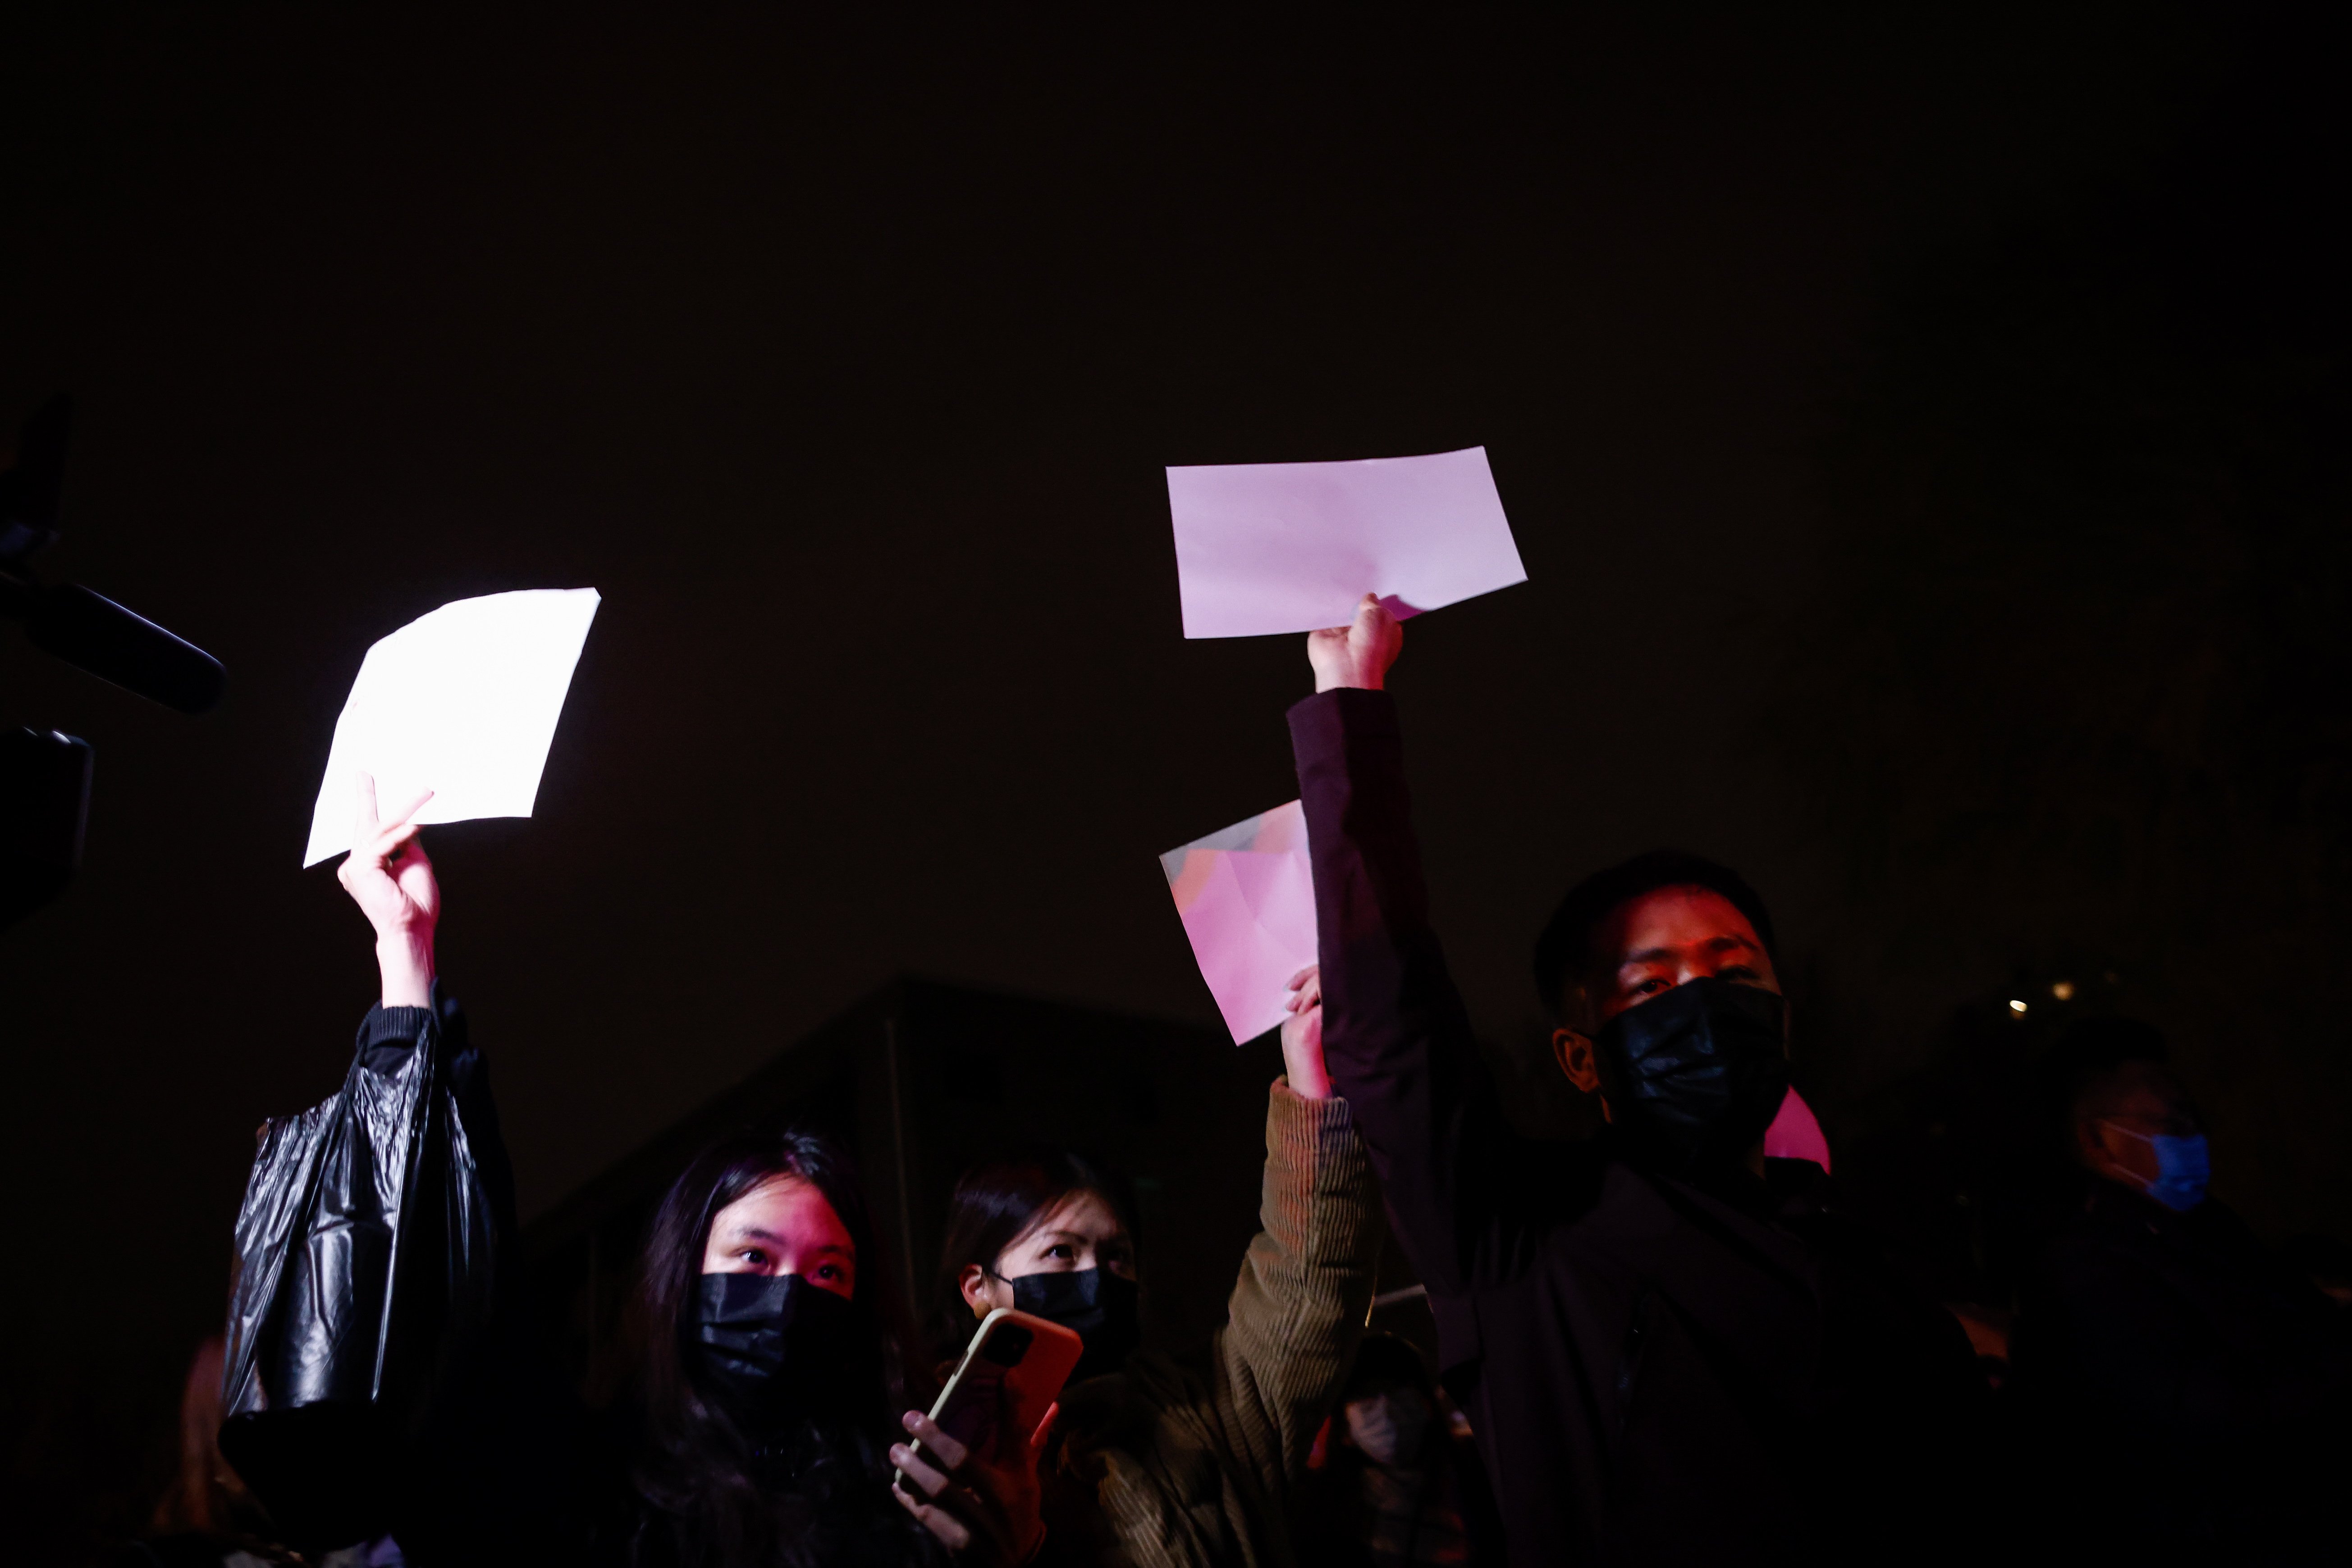 Protestes a la Xina: per què es manifesten amb fulls en blanc?